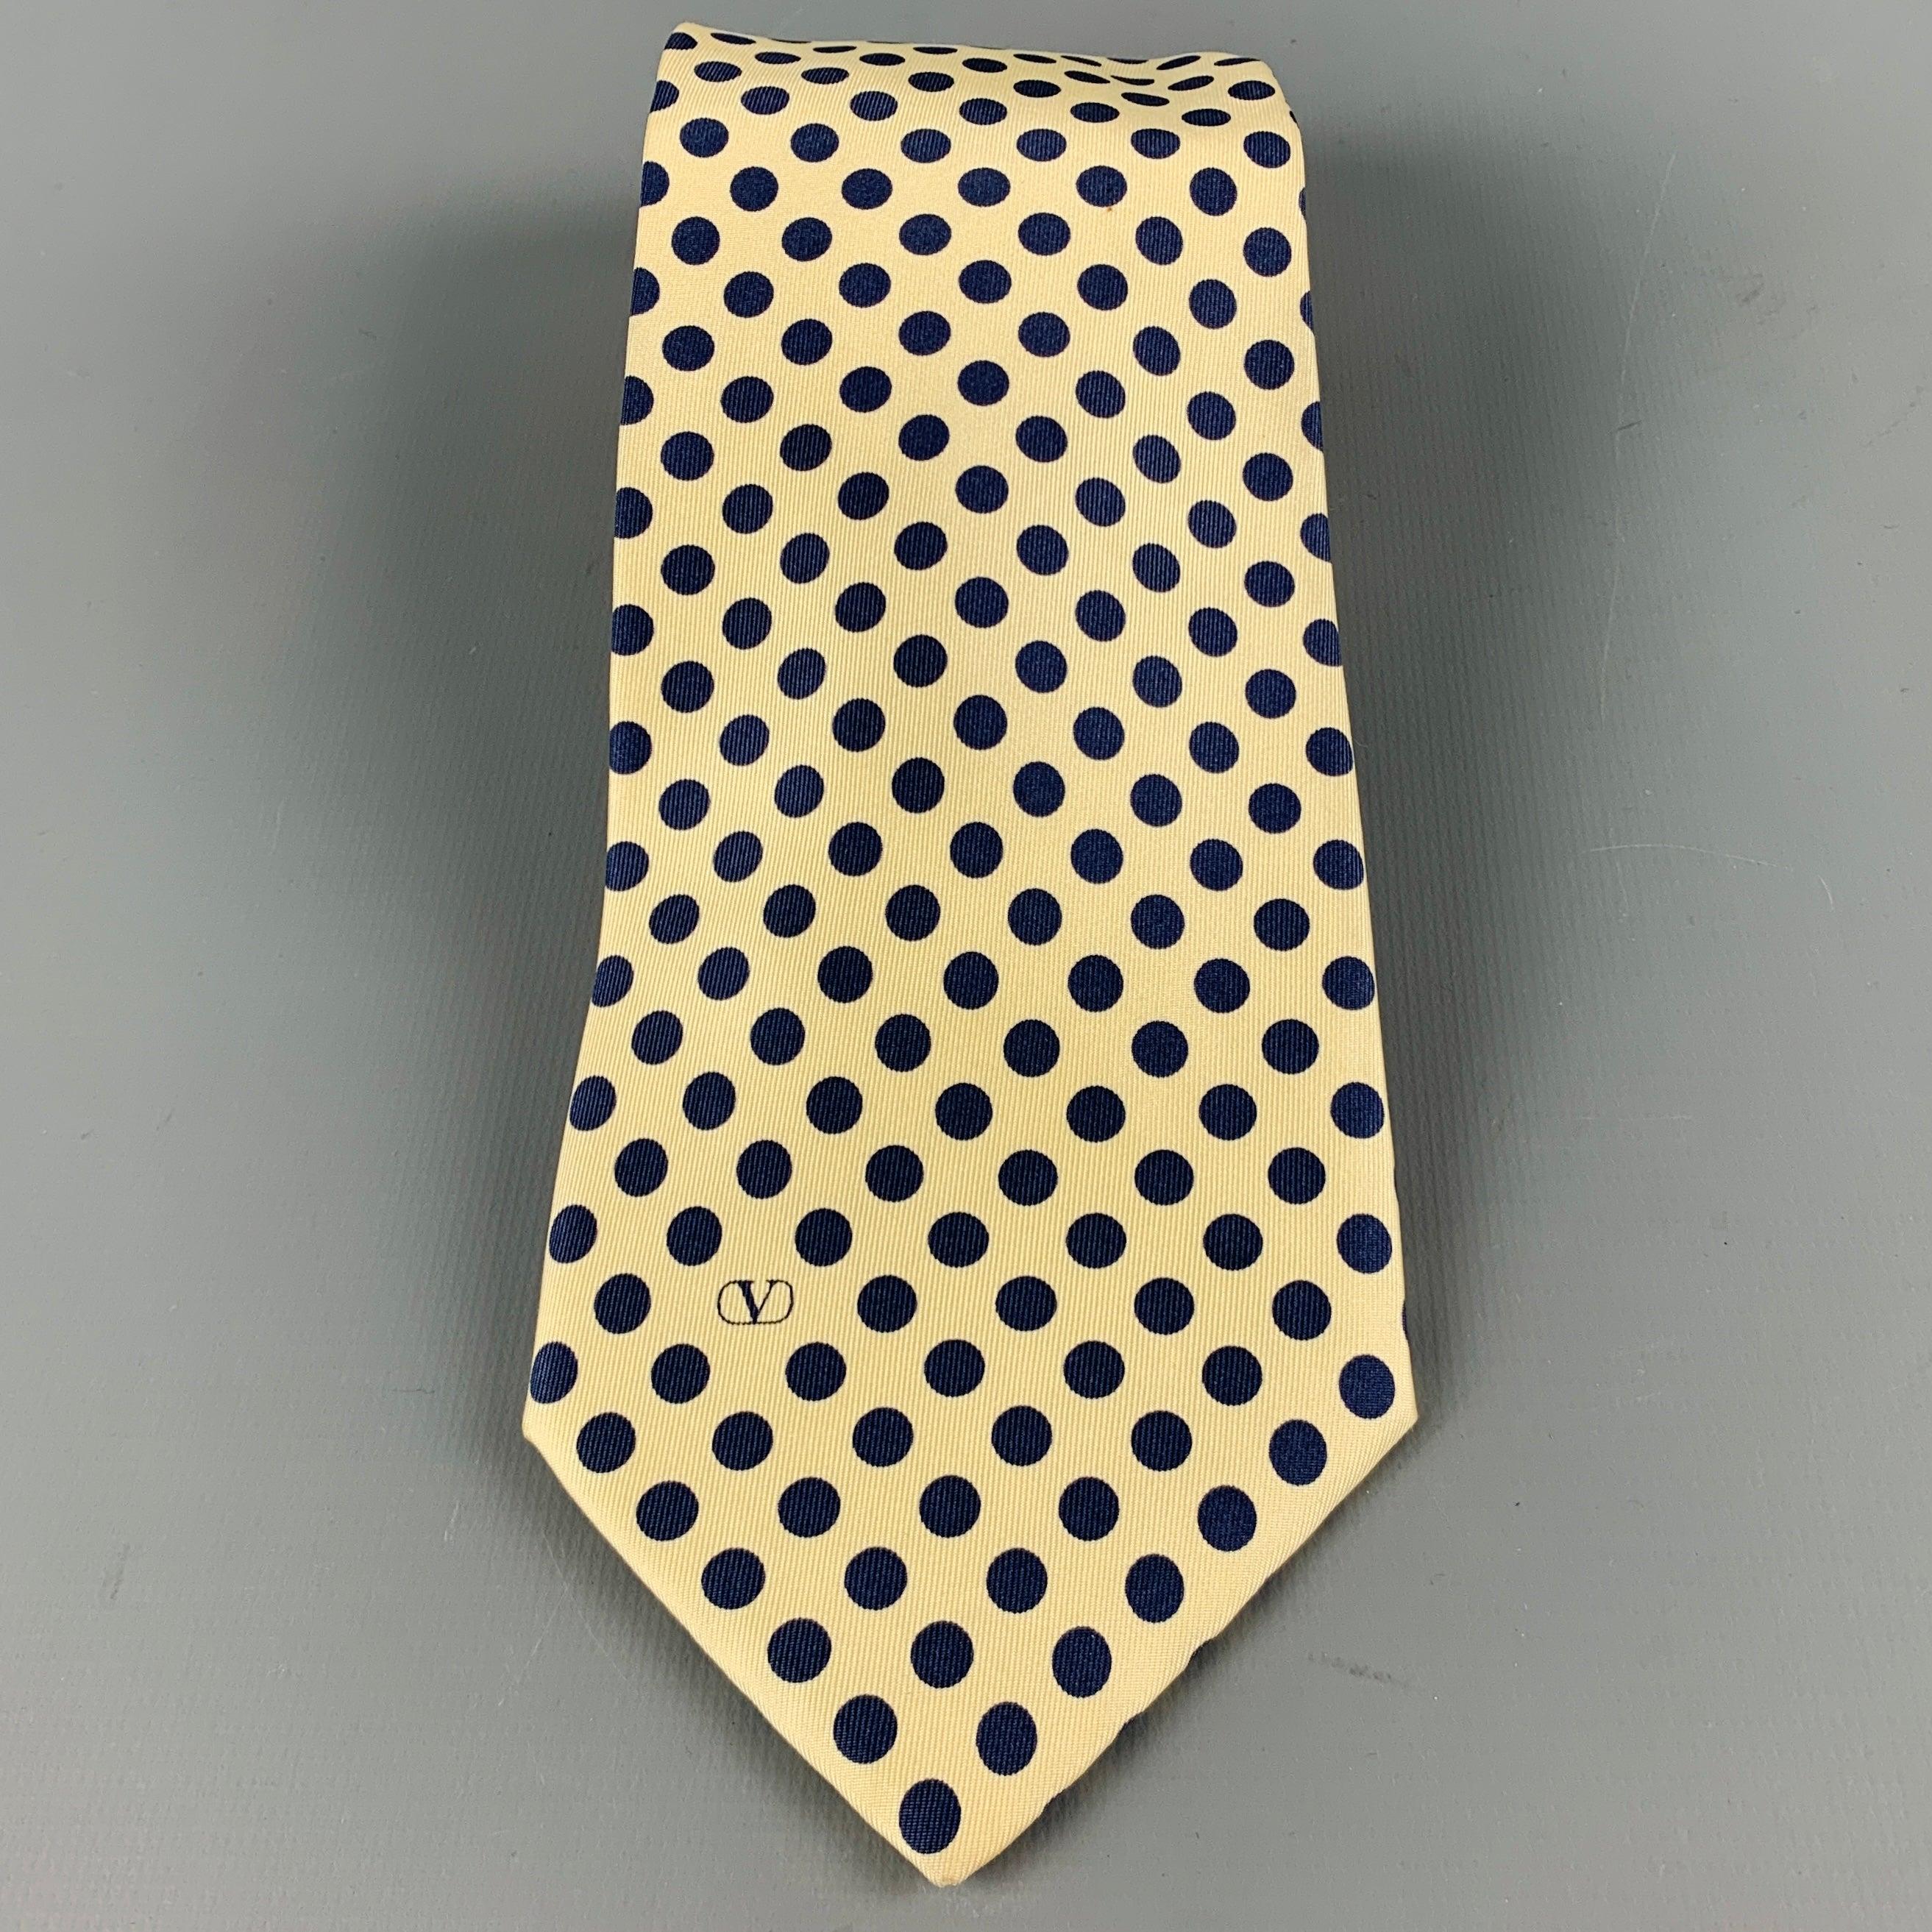 Vintage VALENTINO
Krawatte in einer
Gelber Seidenstoff mit marineblauem Punktemuster und dem charakteristischen Valentino Monogramm. Made in Italy. sehr guter gebrauchter Zustand. Geringfügiges Zeichen. 

Abmessungen: 
  Breite: 3,75 Zoll Länge: 58